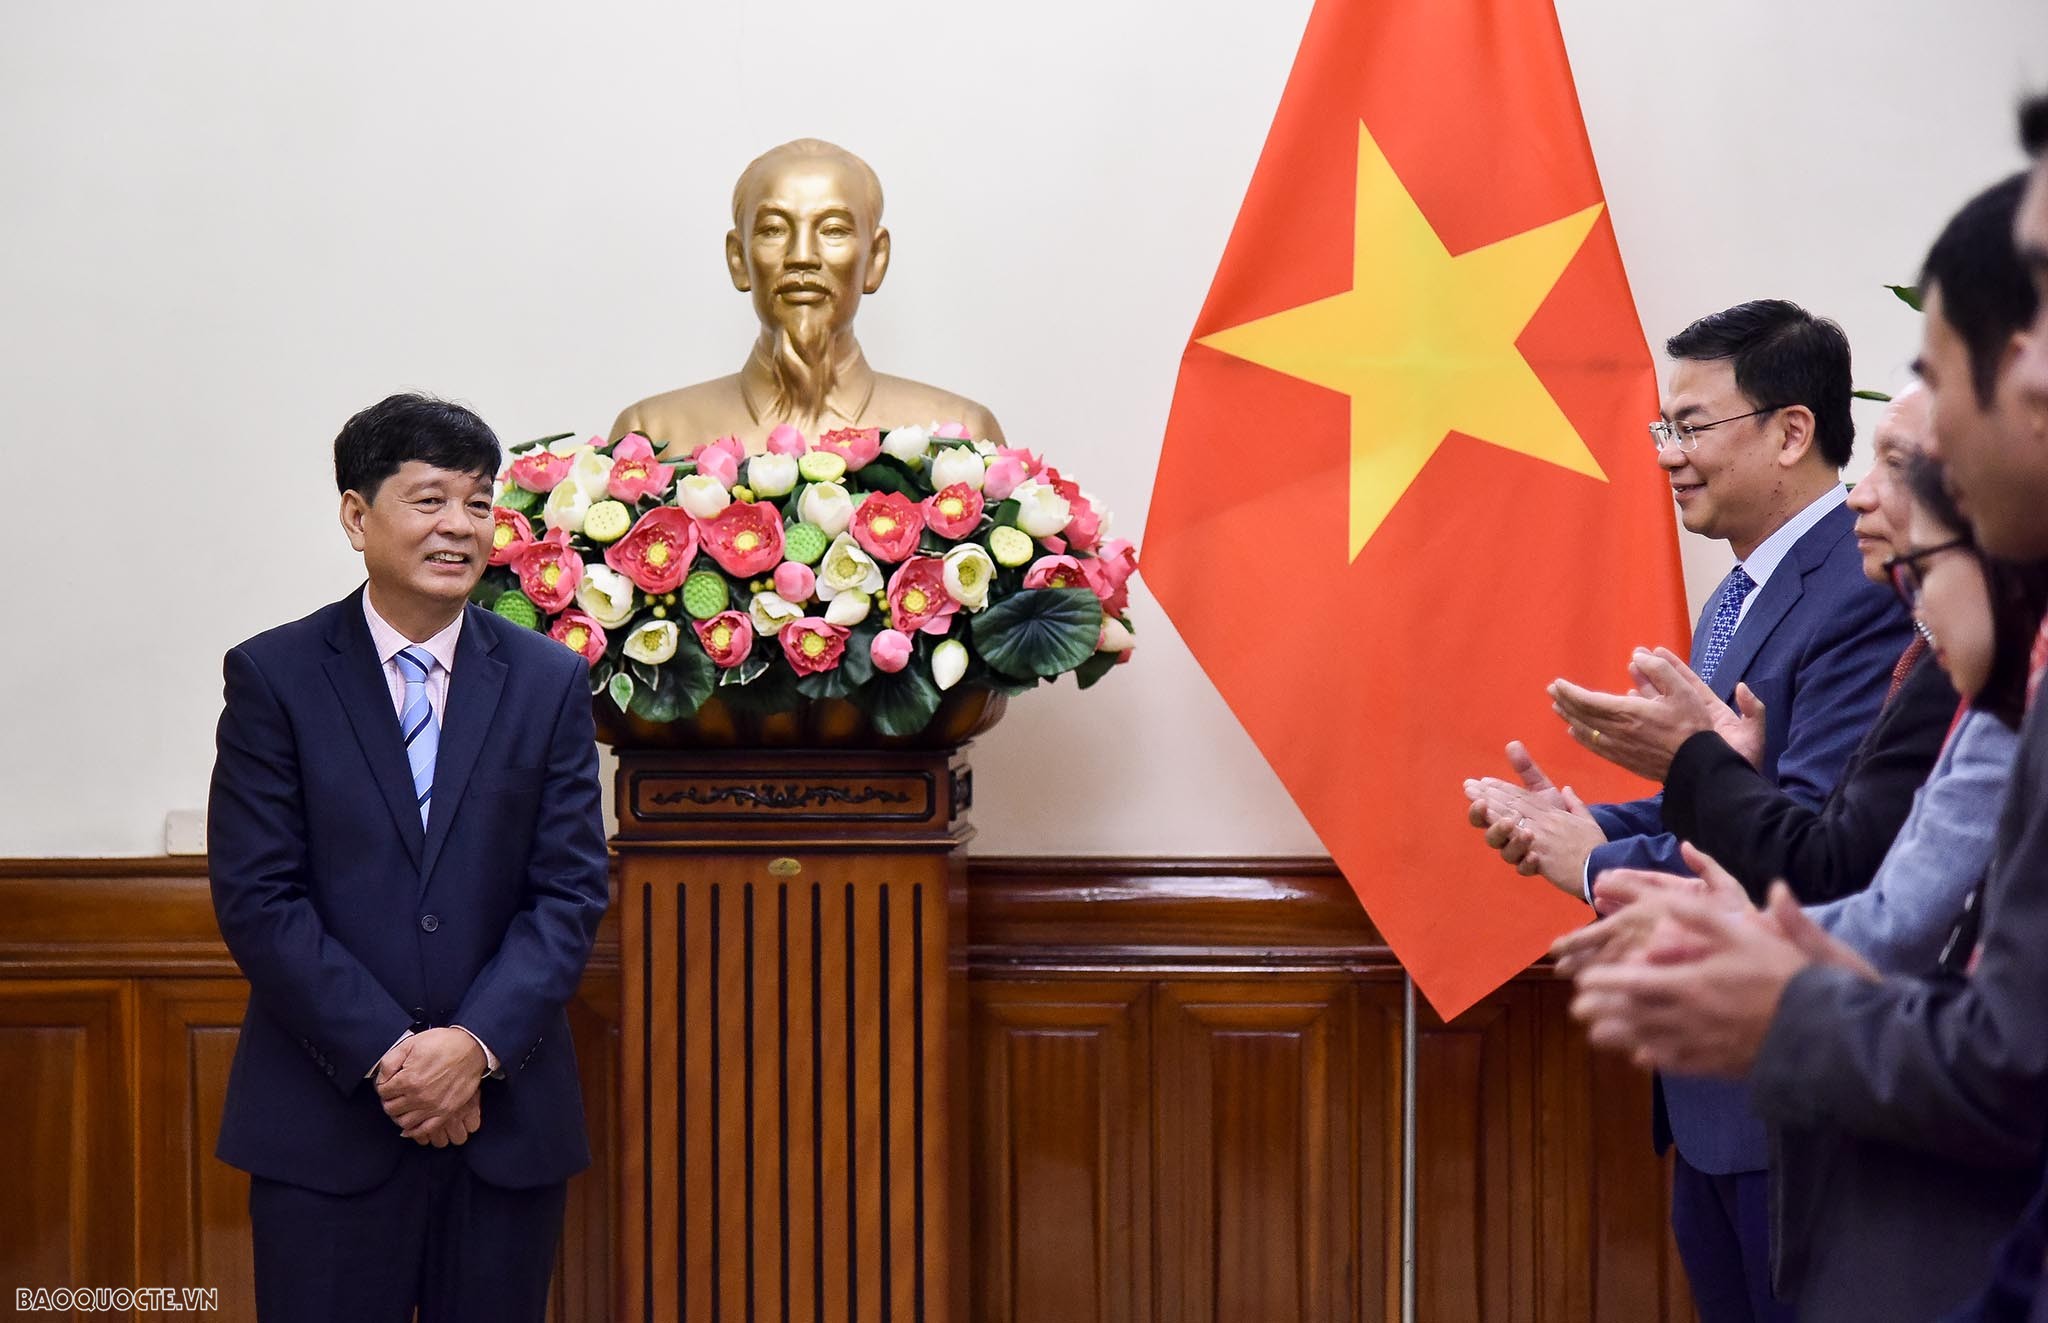 Thứ trưởng Ngoại giao Phạm Quang Hiệu trao quyết định tiếp nhận và điều động 7 cán bộ lãnh đạo cấp Vụ